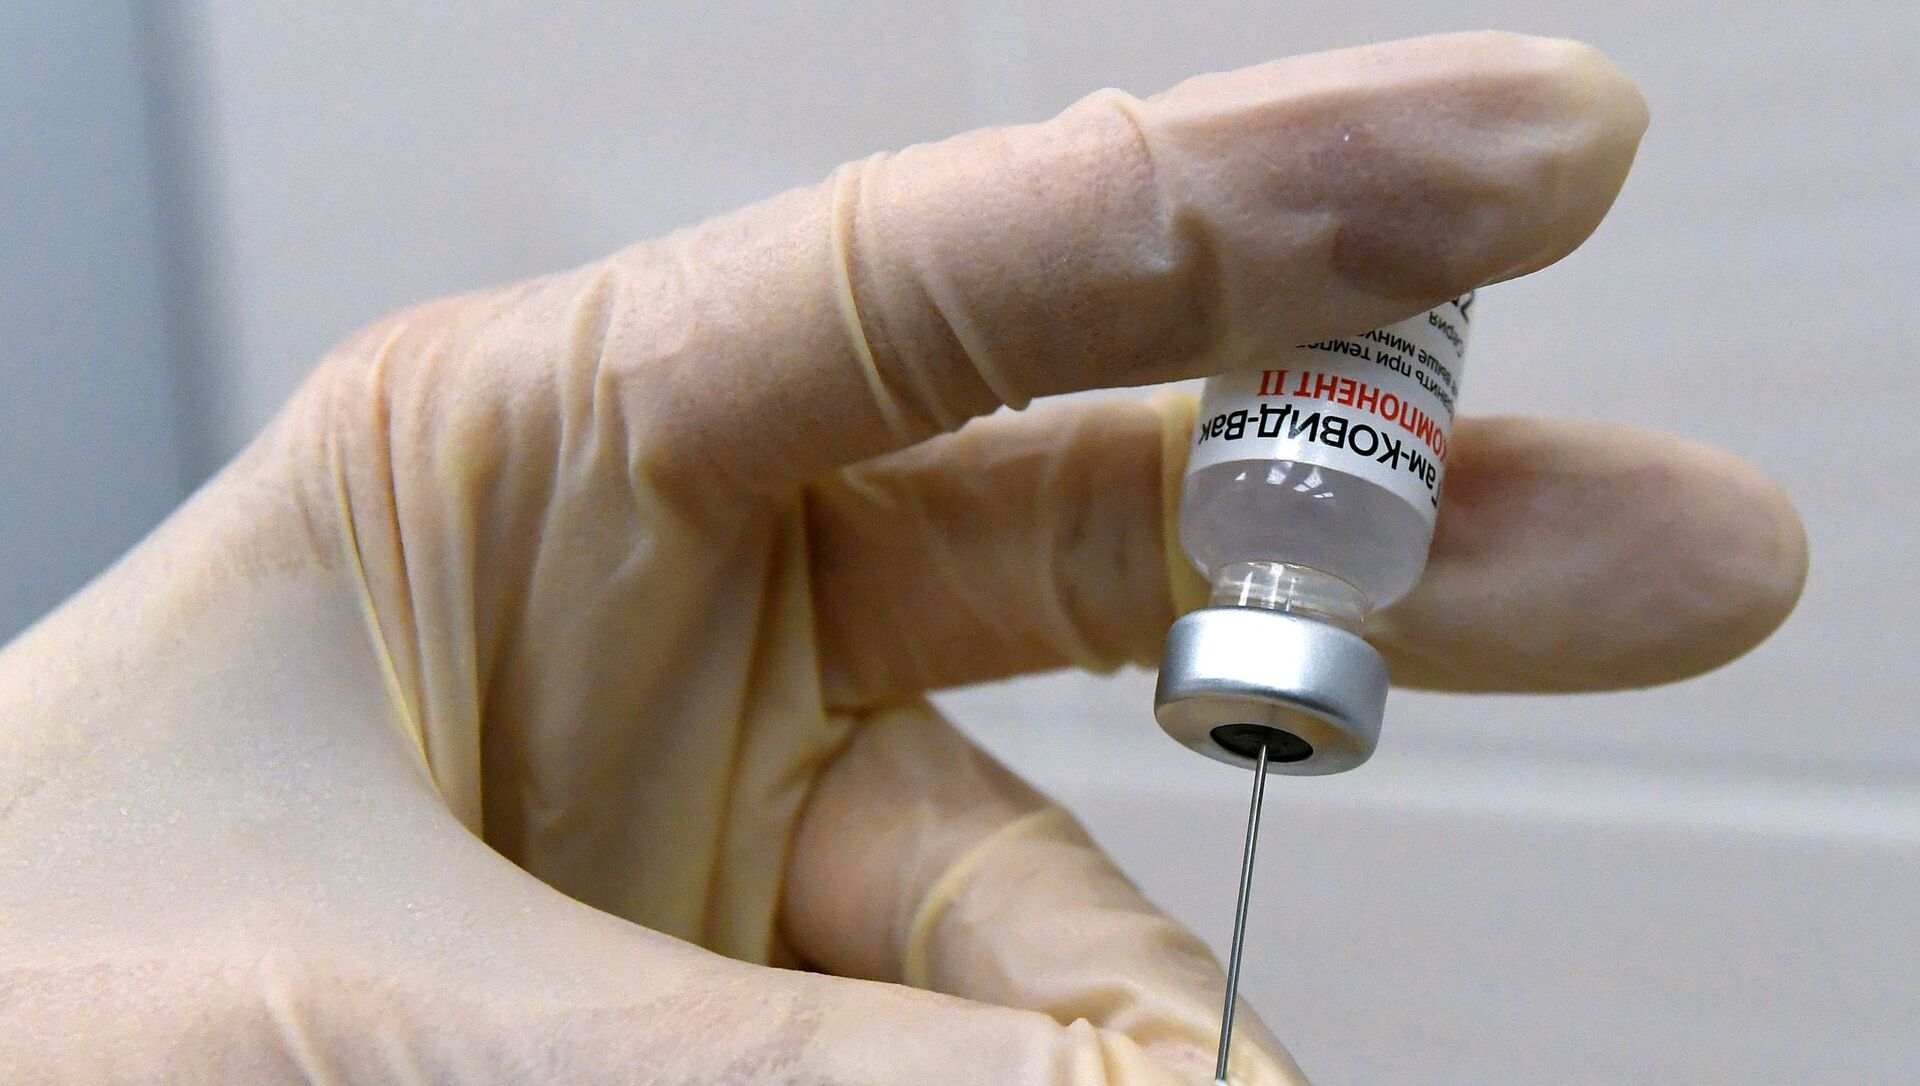 Медсестра набирает в шприц вакцину против COVID-19 Спутник V (Гам-КОВИД-Вак) - Sputnik Lietuva, 1920, 19.02.2021